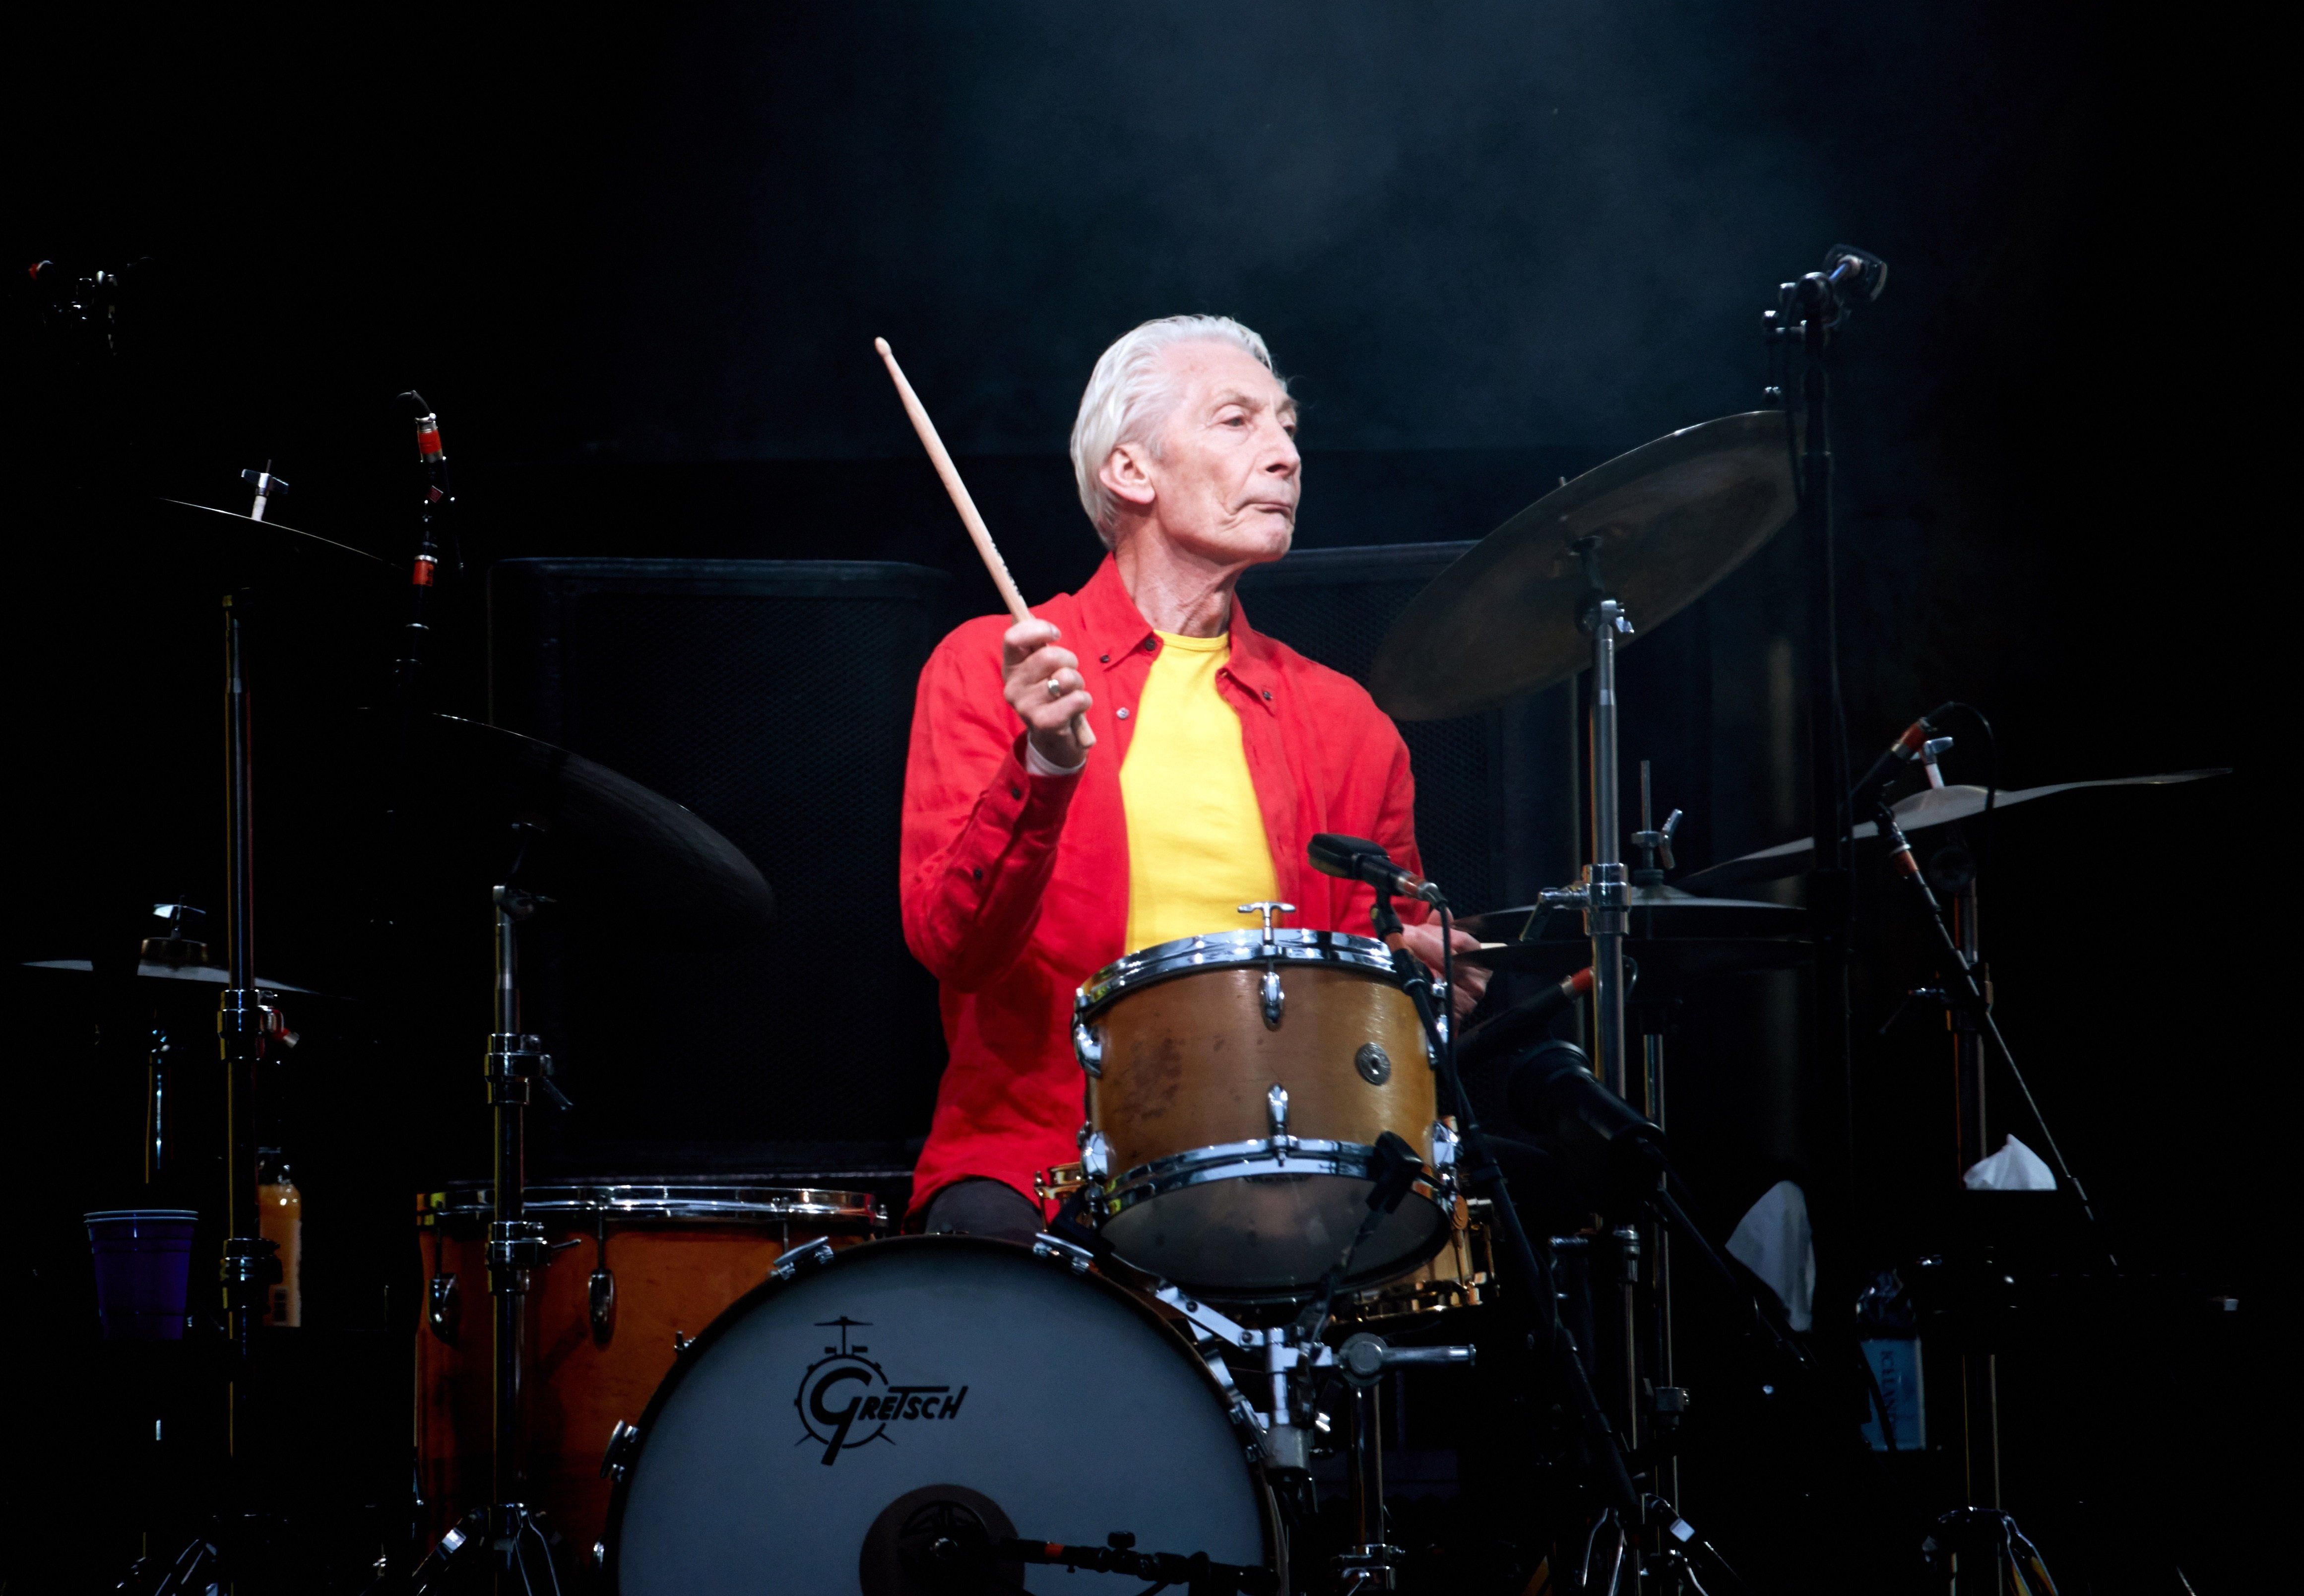 Nyap majúscul a 'El Mundo' amb la mort de Charlie Watts, dels Rolling Stones